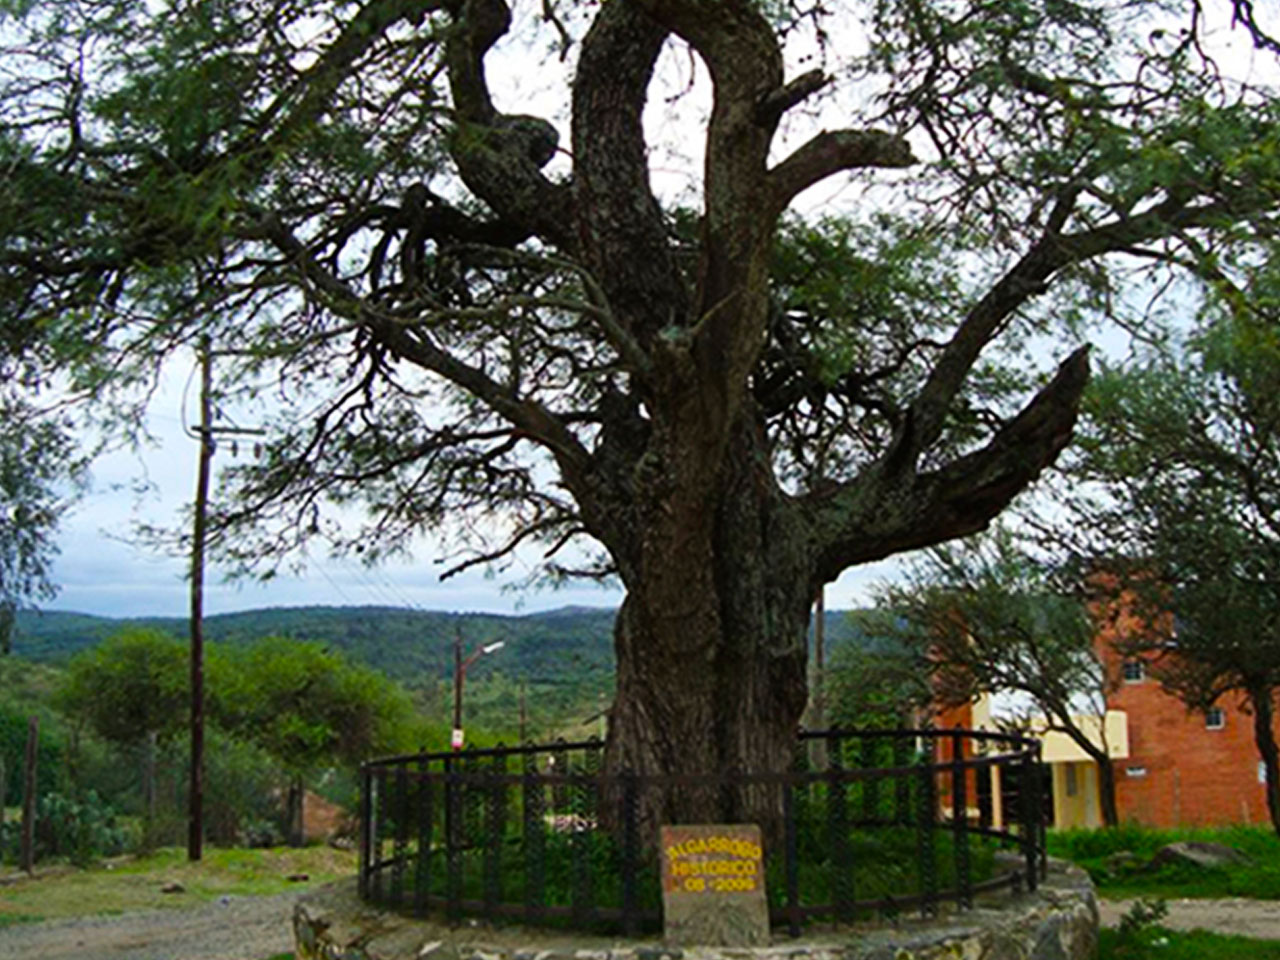 Sitios a Visitar en Mayu Sumaj - Imagen: Carlospazturismo.com.ar